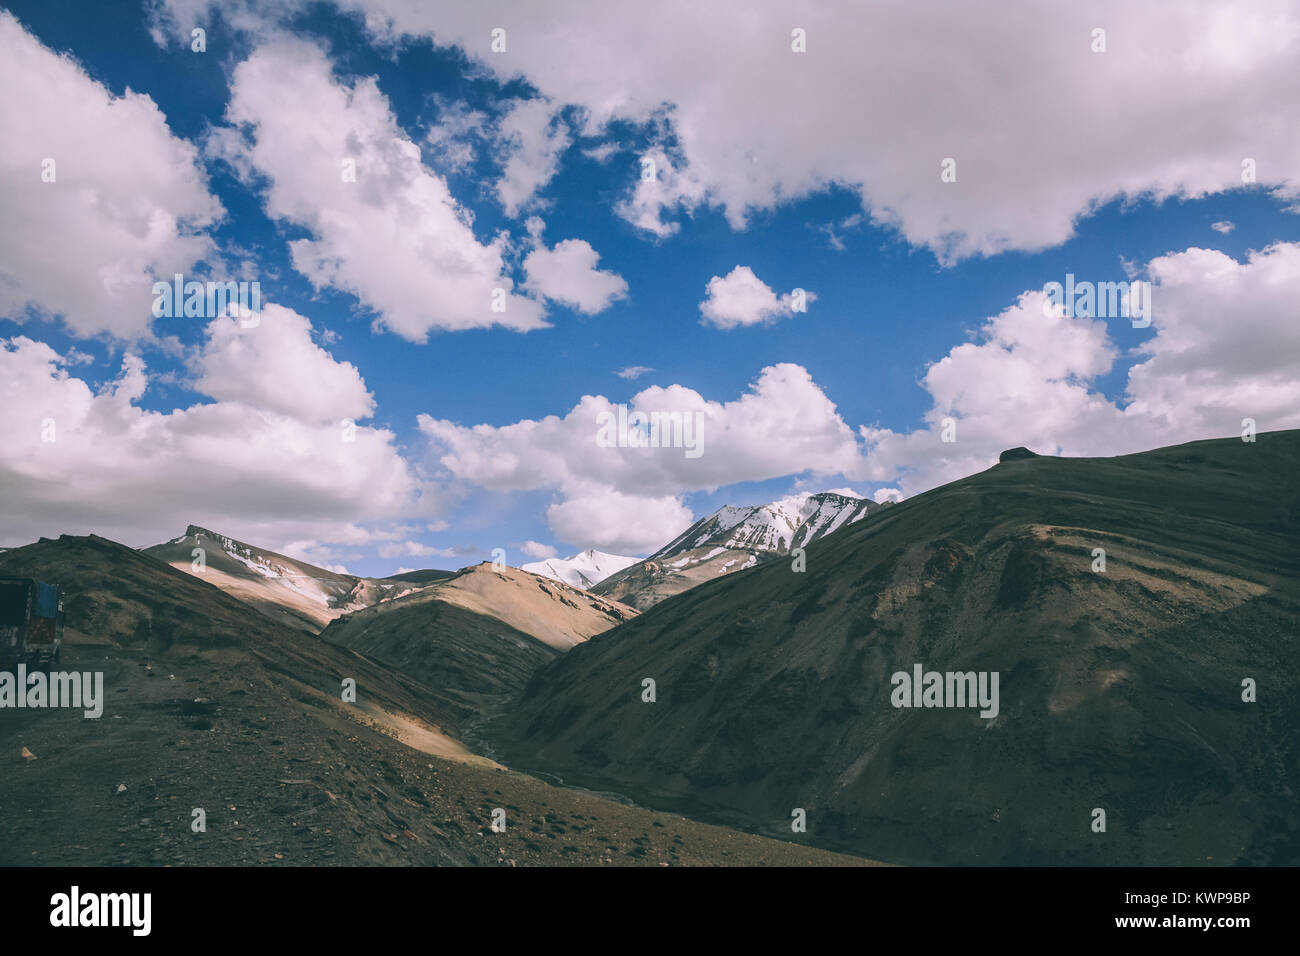 Beau paysage de montagne pittoresque dans la région du Ladakh, Himalaya Indien Banque D'Images